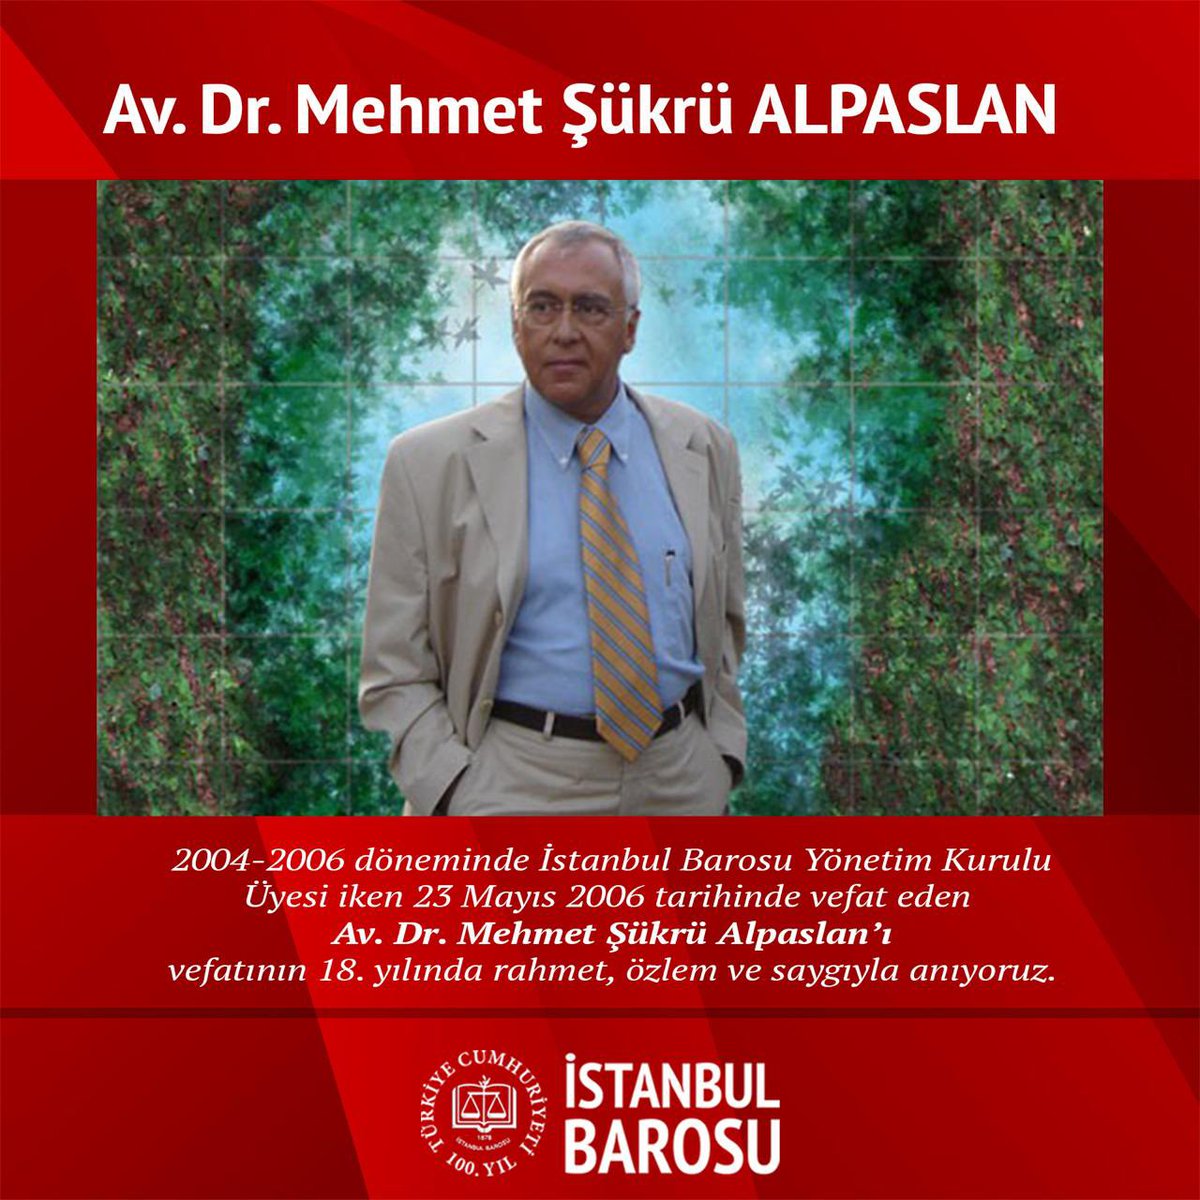 2004-2006 döneminde İstanbul Barosu Yönetim Kurulu Üyesi iken 23 Mayıs 2006 tarihinde vefat eden Av. Dr. Mehmet Şükrü Alpaslan'ı vefatının 18. yılında rahmet, özlem ve saygıyla anıyoruz.